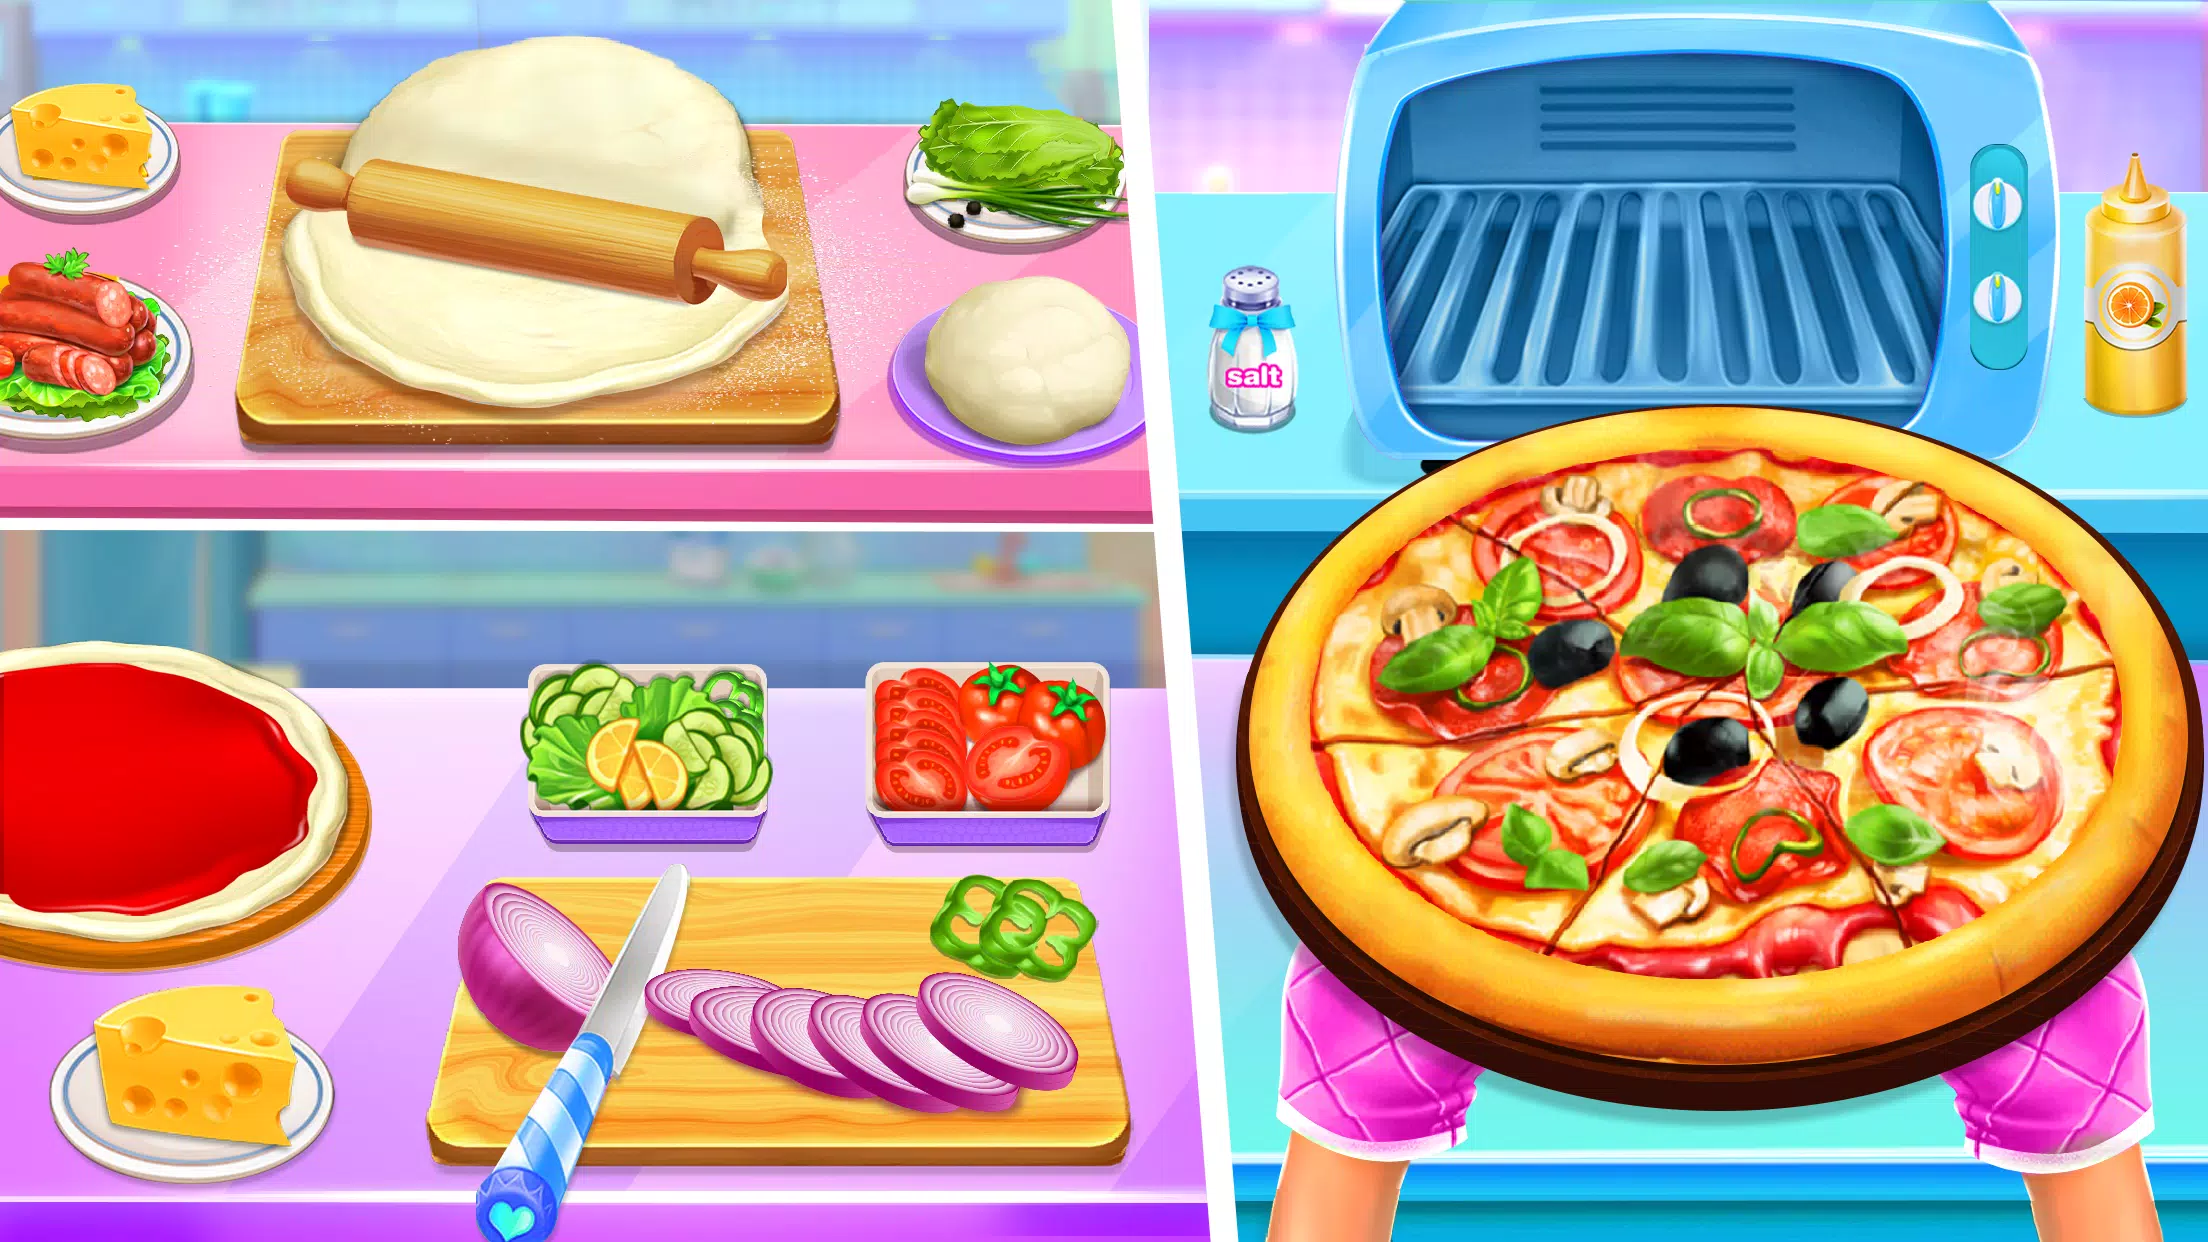 Pizza De Cozimento - Jogo De C – Apps no Google Play